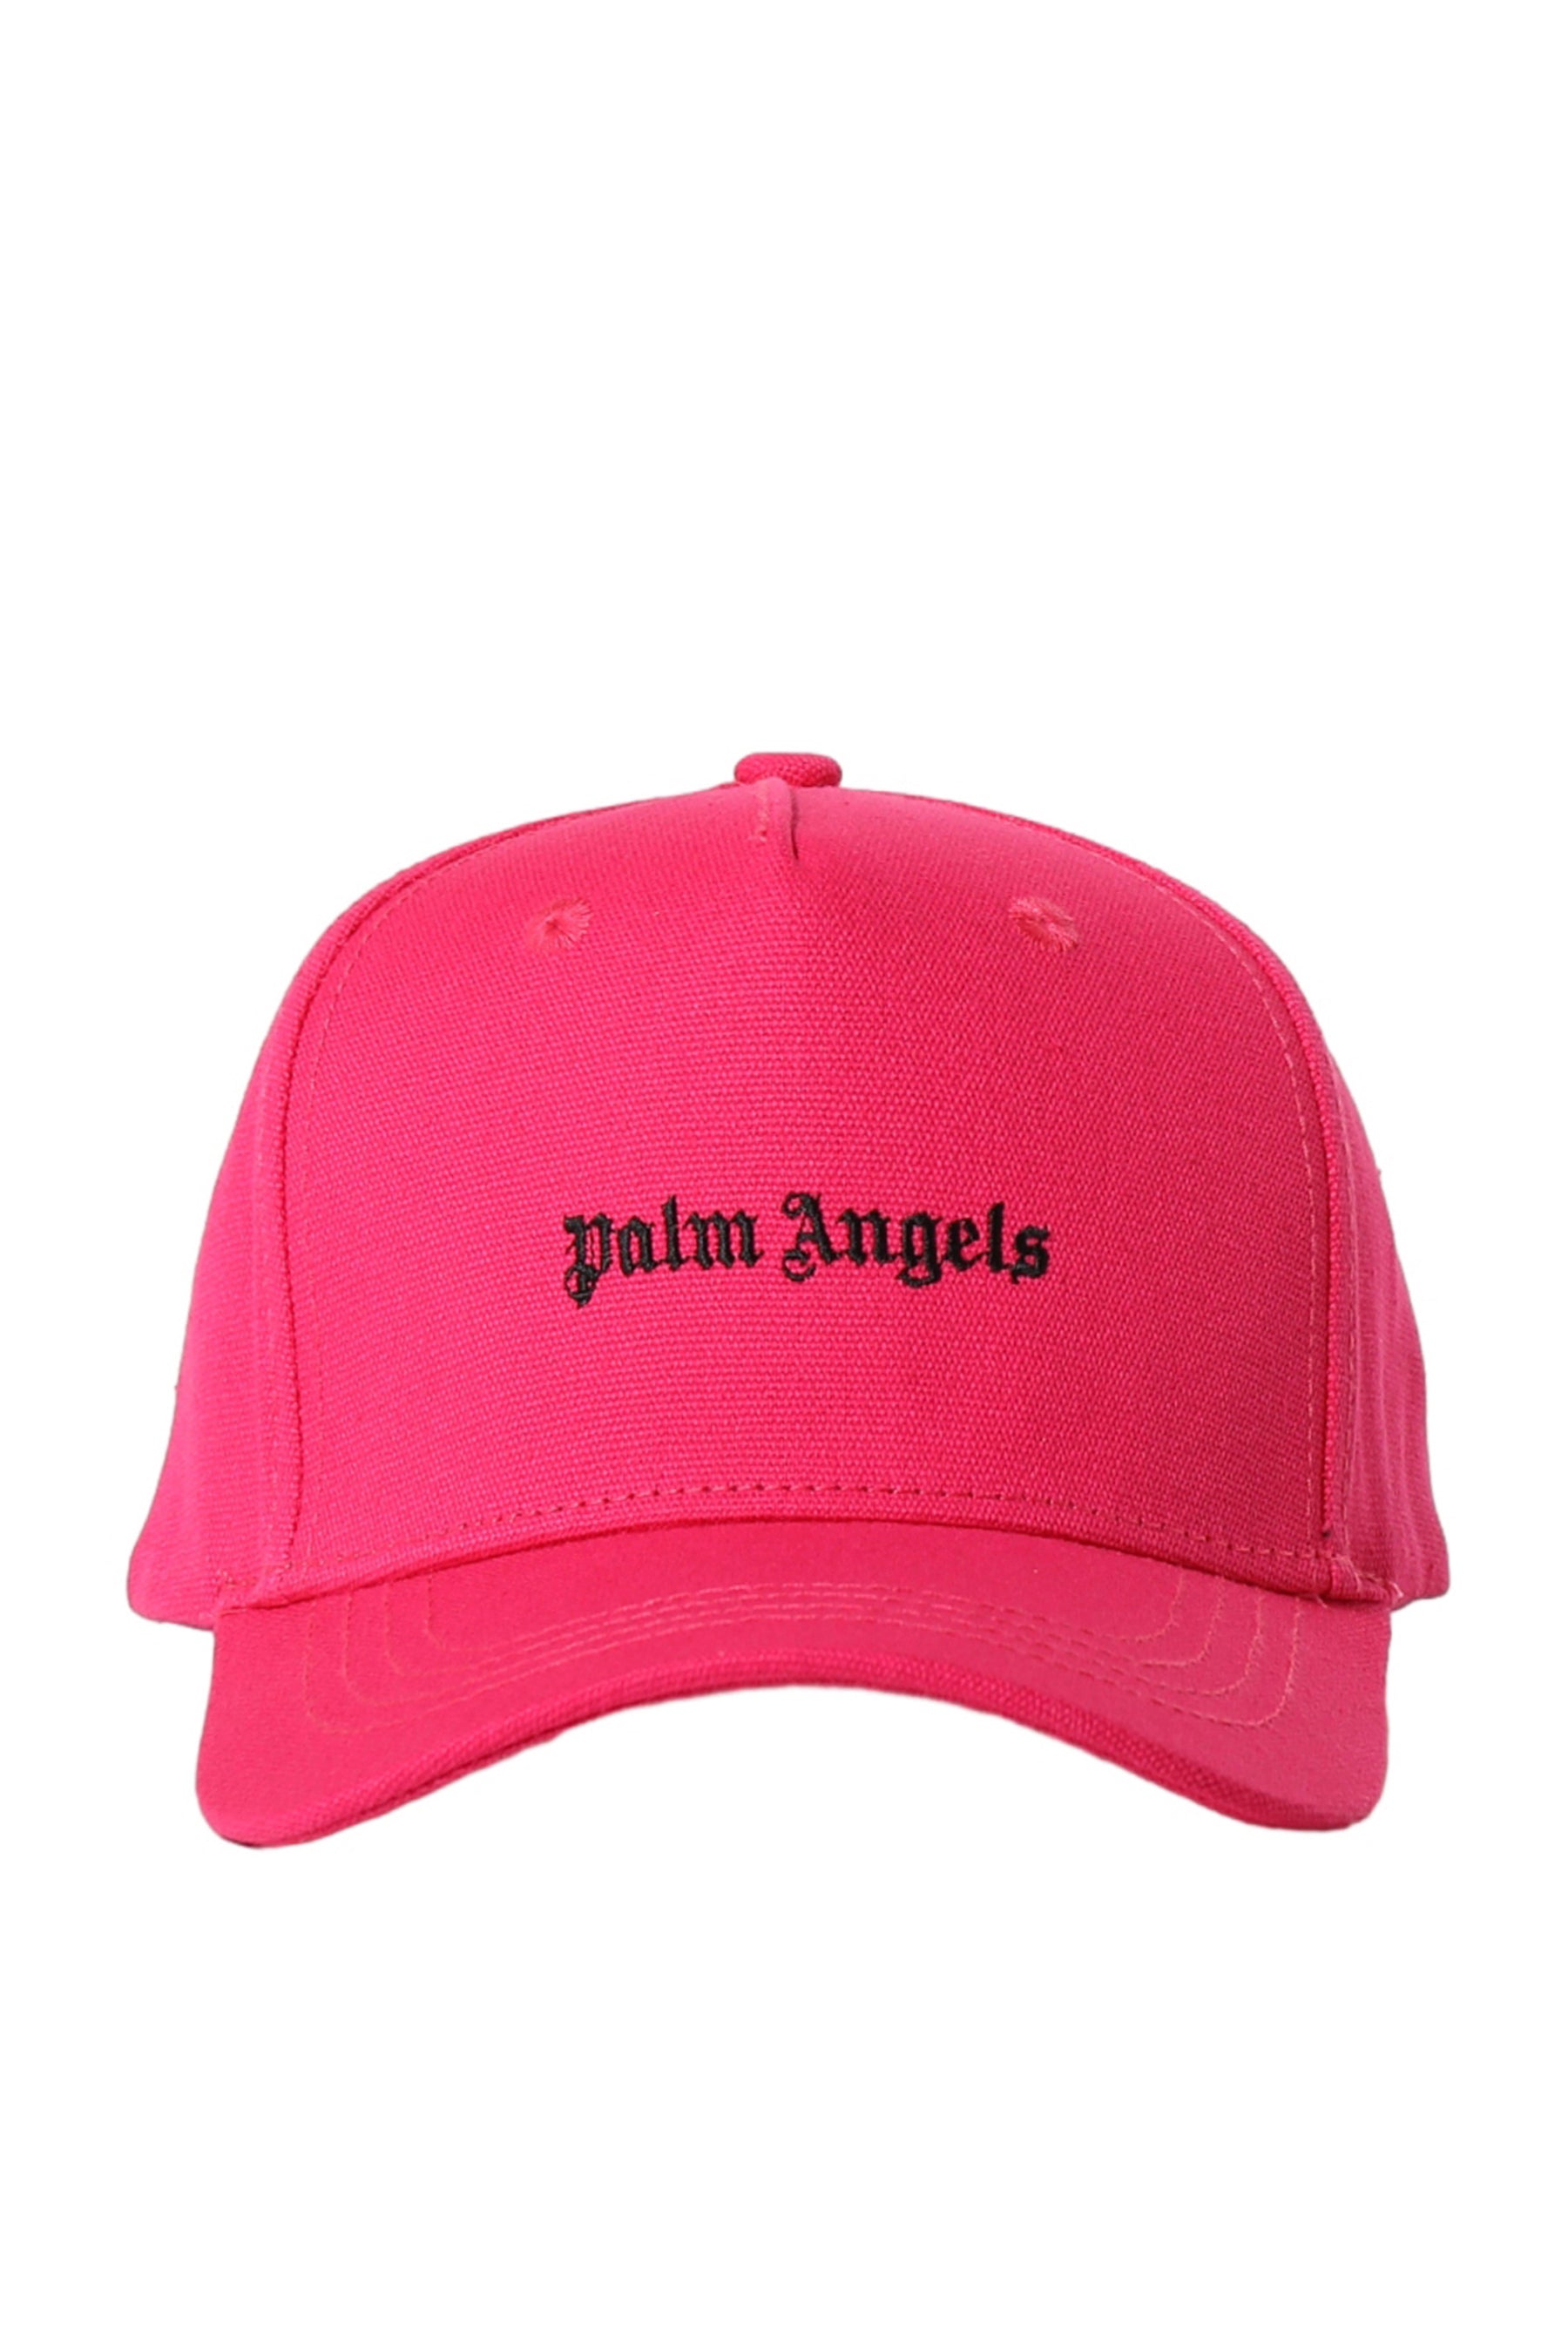 Palm Angels パームエンジェルス FW23 CLASSIC LOGO CAP / FUCHSIA WHT